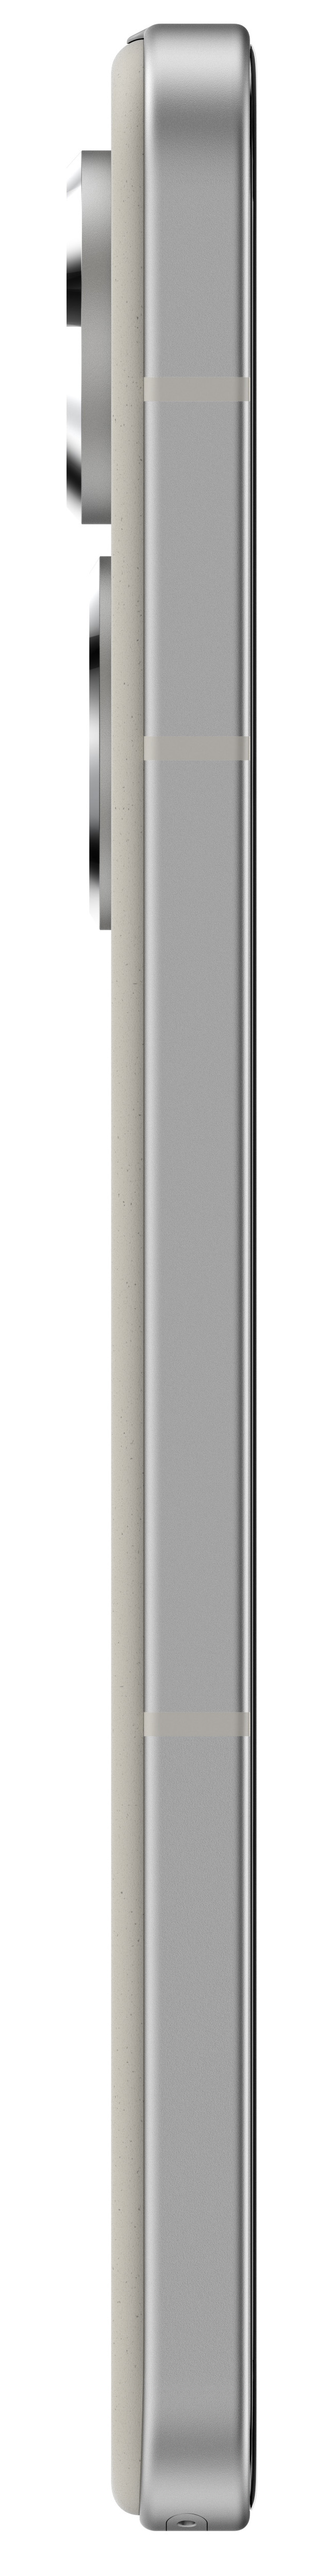 Asus - Smartphone ASUS Zenfone 9 5G 5.92" (8 / 128GB) 120Hz Branco